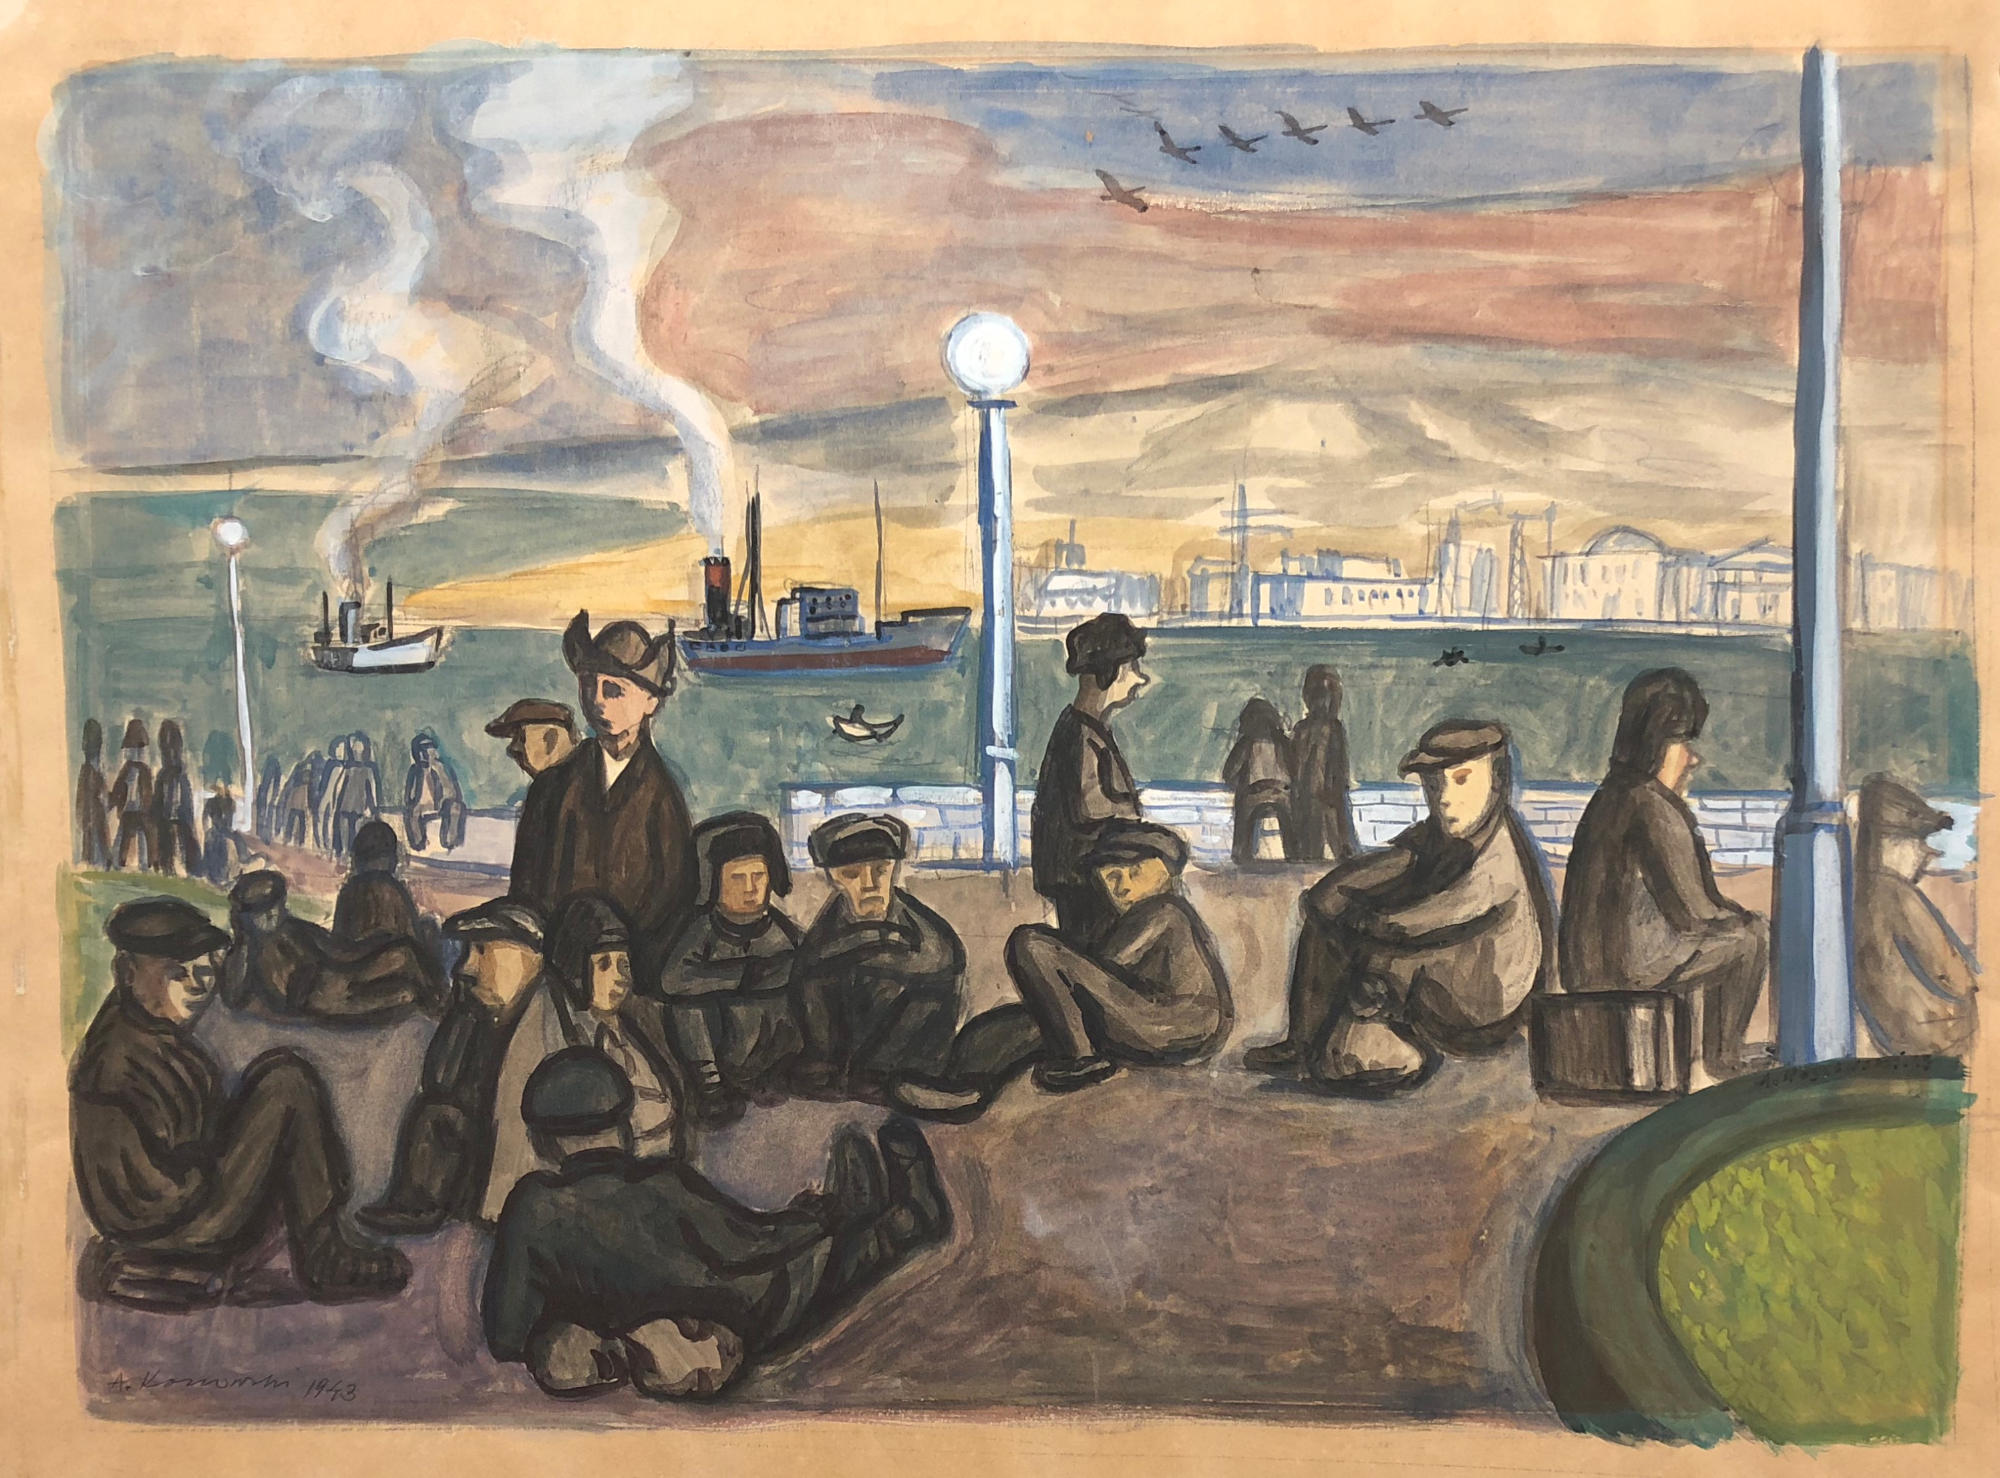 Obraz przedstawiający ludzi czekających na transport na nabrzeżu. Za nimi jest woda, w tle widać statki, z ich kominów wydobywa się dym. Na drugim brzegu widać budynki, a na niebie lecący klucz ptaków sugerujący zbliżającą się zimę. Tempera na papierze, Adam Kossowski, praca stworzona w Londynie w 1943 roku..